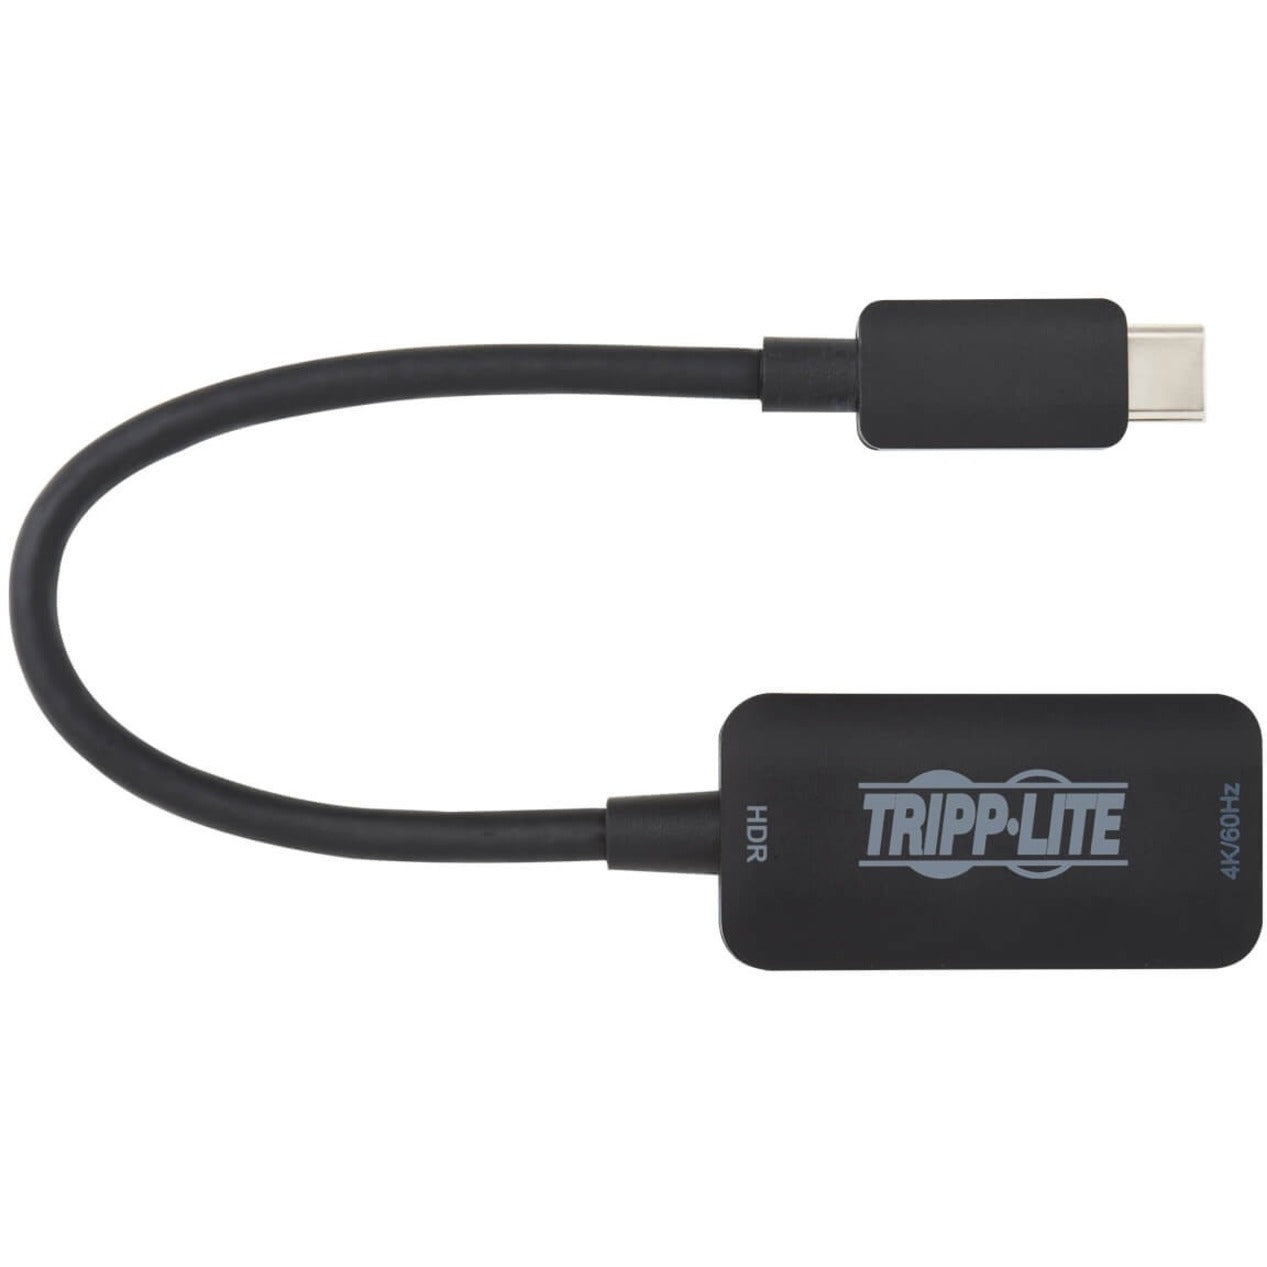 特拉普利特 U444-06N-HDR-B USB-C 转 HDMI 适配器电缆，男/女，黑色，6 寸。品牌名称：特拉普利特。品牌名称翻译为：Tripp Lite